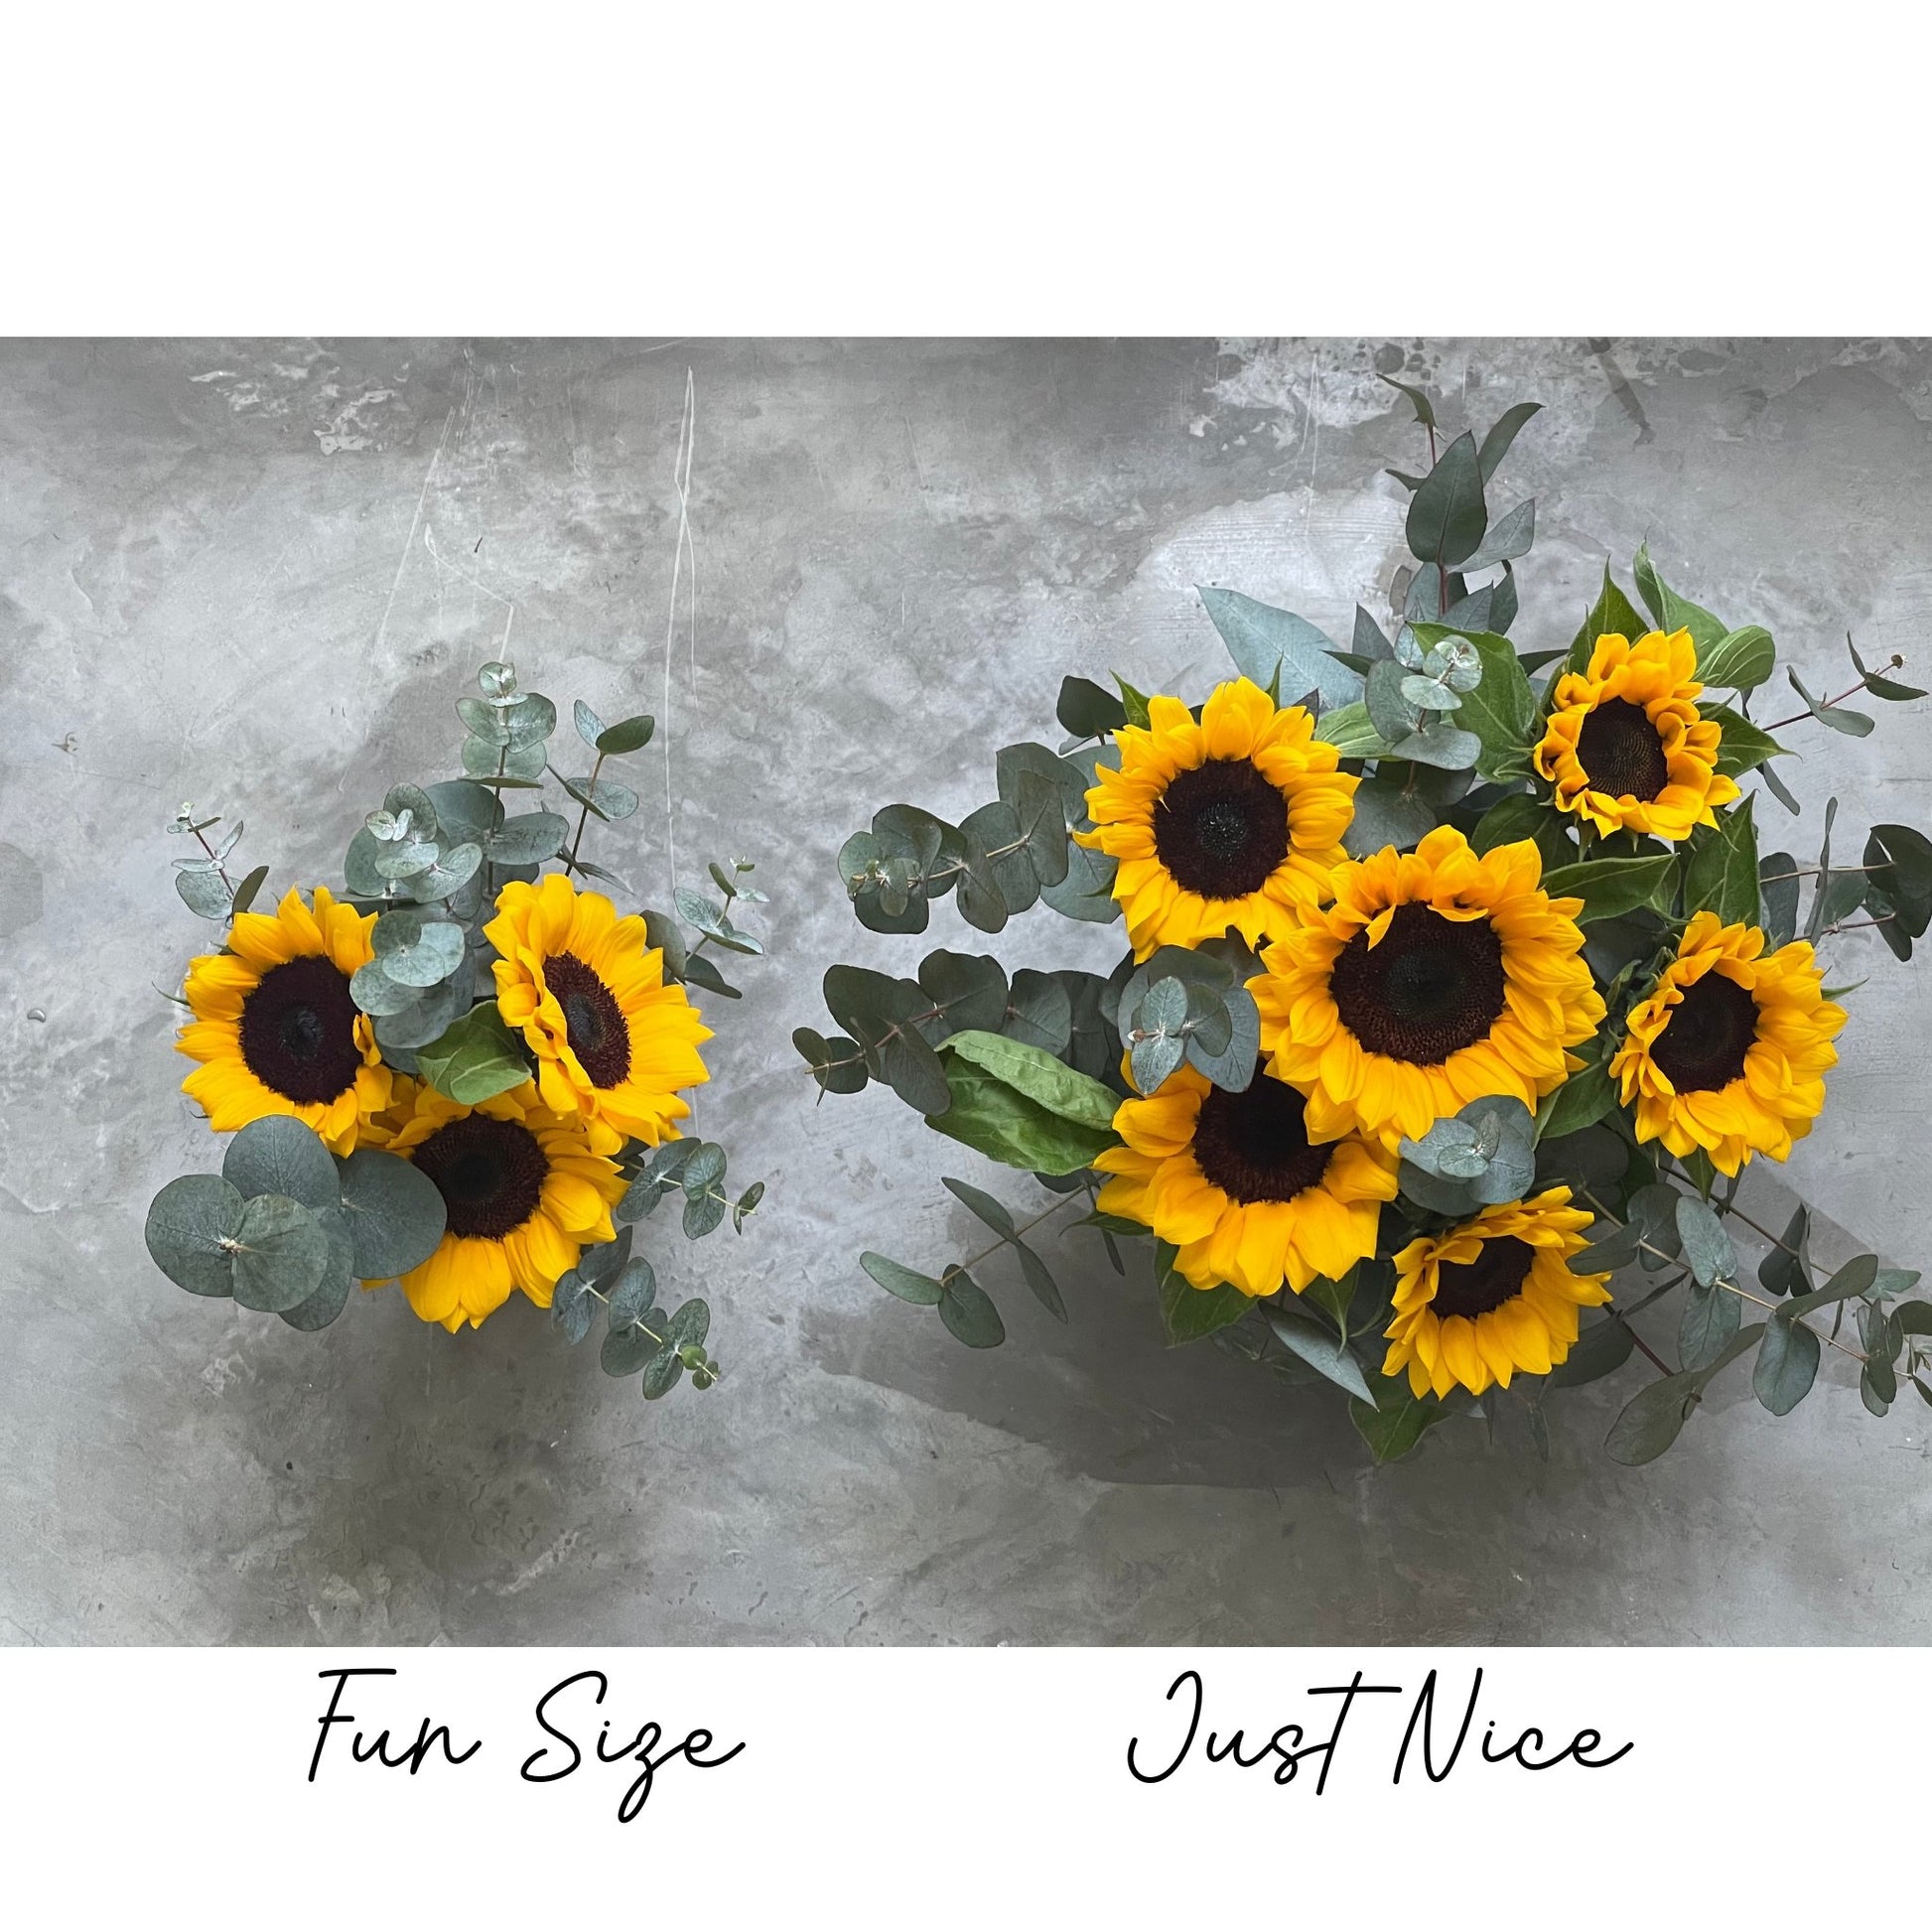 Sunflower Bouquet - Happy Bunch Malaysia (1102420U)